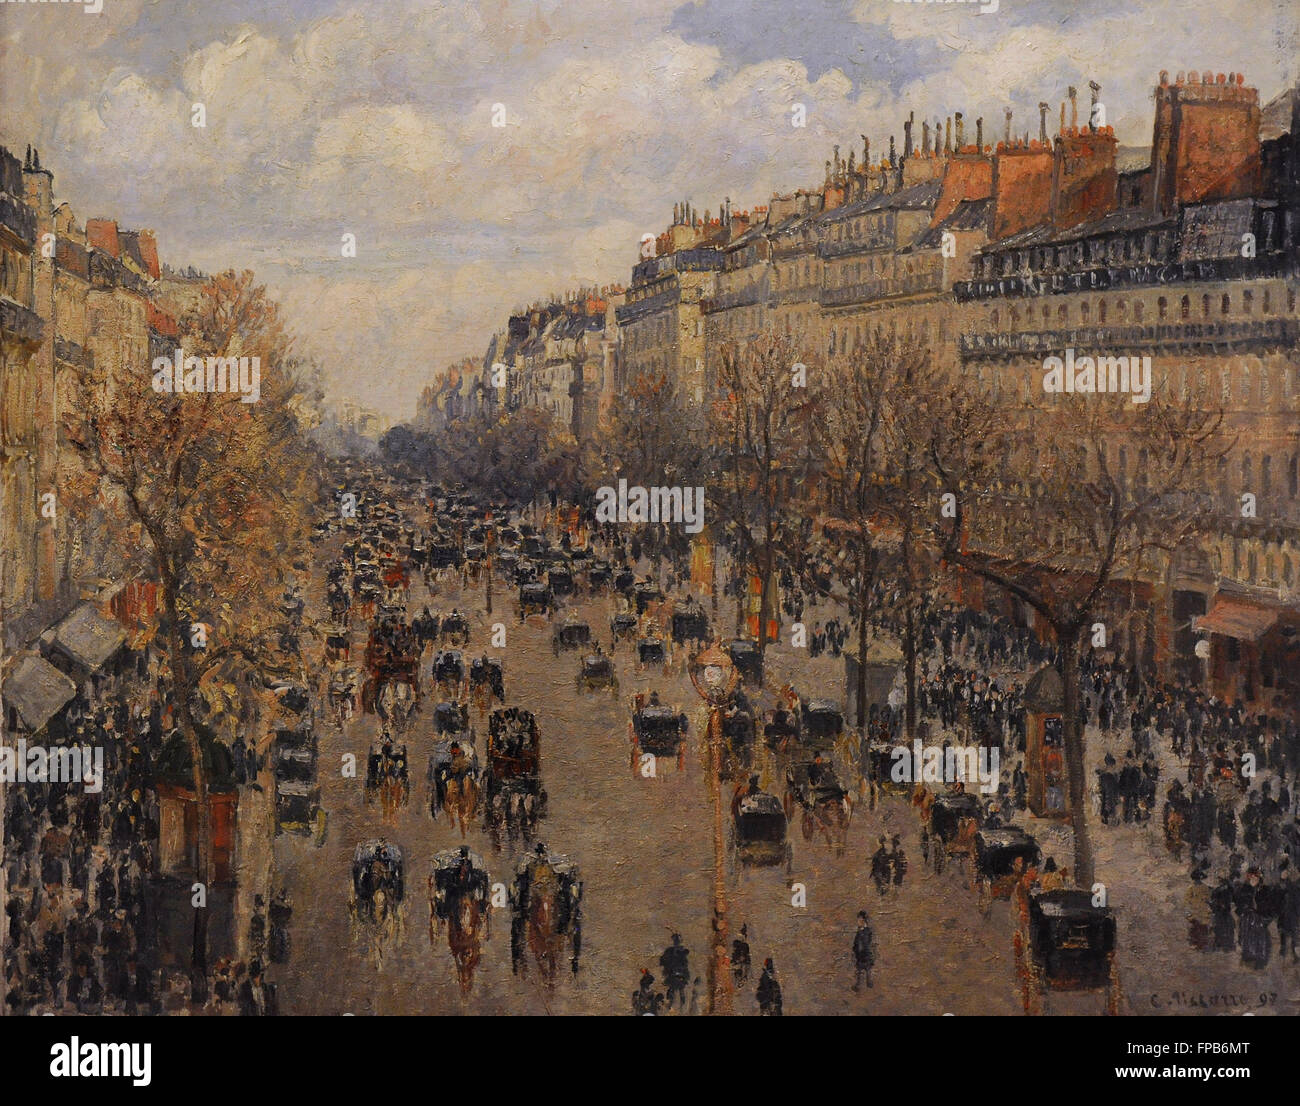 Camille Pissarro (1830-1903). Französischer Maler. Boulevard Montmartre in Paris, 1897. Öl auf Leinwand. Die Eremitage. Sankt Petersburg. Russland. Stockfoto